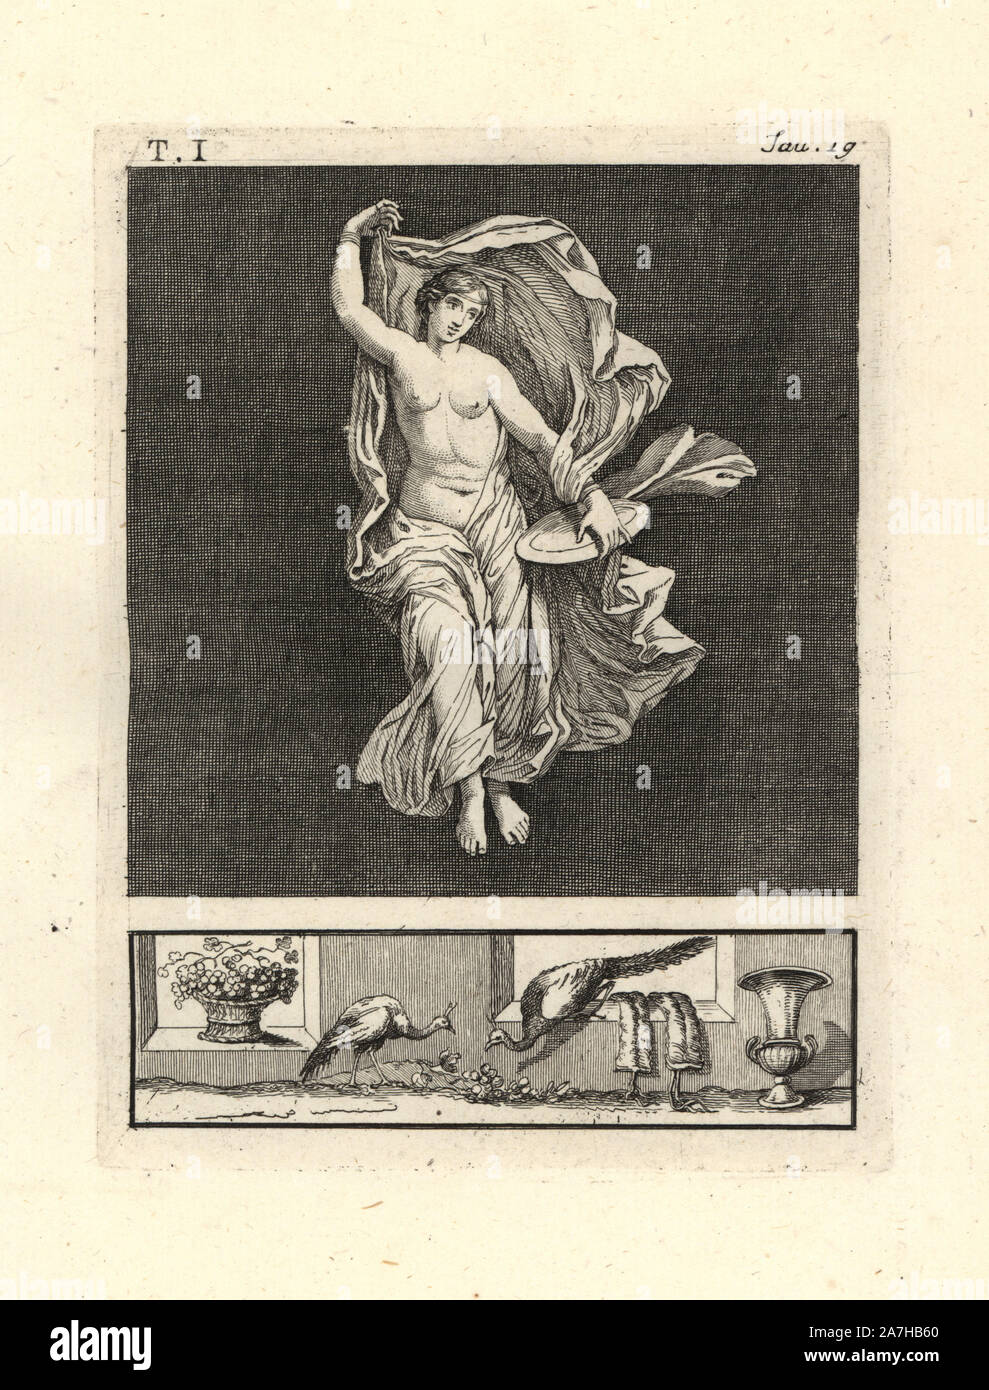 Peinture enlevée d'un mur d'une pièce, peut-être un triclinium ou salle à manger, dans une maison de Pompéi en 1749. Il montre Vénus, ou un danseur ou bacchant représentant sa danse, grâce à un disque d'or et bleu voile diaphane. Gravée sur cuivre par Tommaso Piroli à partir de son propre 'Antichita di Ercolano" (antiquités d'Herculanum), Rome, 1789. L'artiste italien et graveur Piroli (1752-1824) a publié six volumes entre 1789 et 1807 documentation les peintures murales et des bronzes trouvés dans Heraculaneum et Pompéi. Banque D'Images